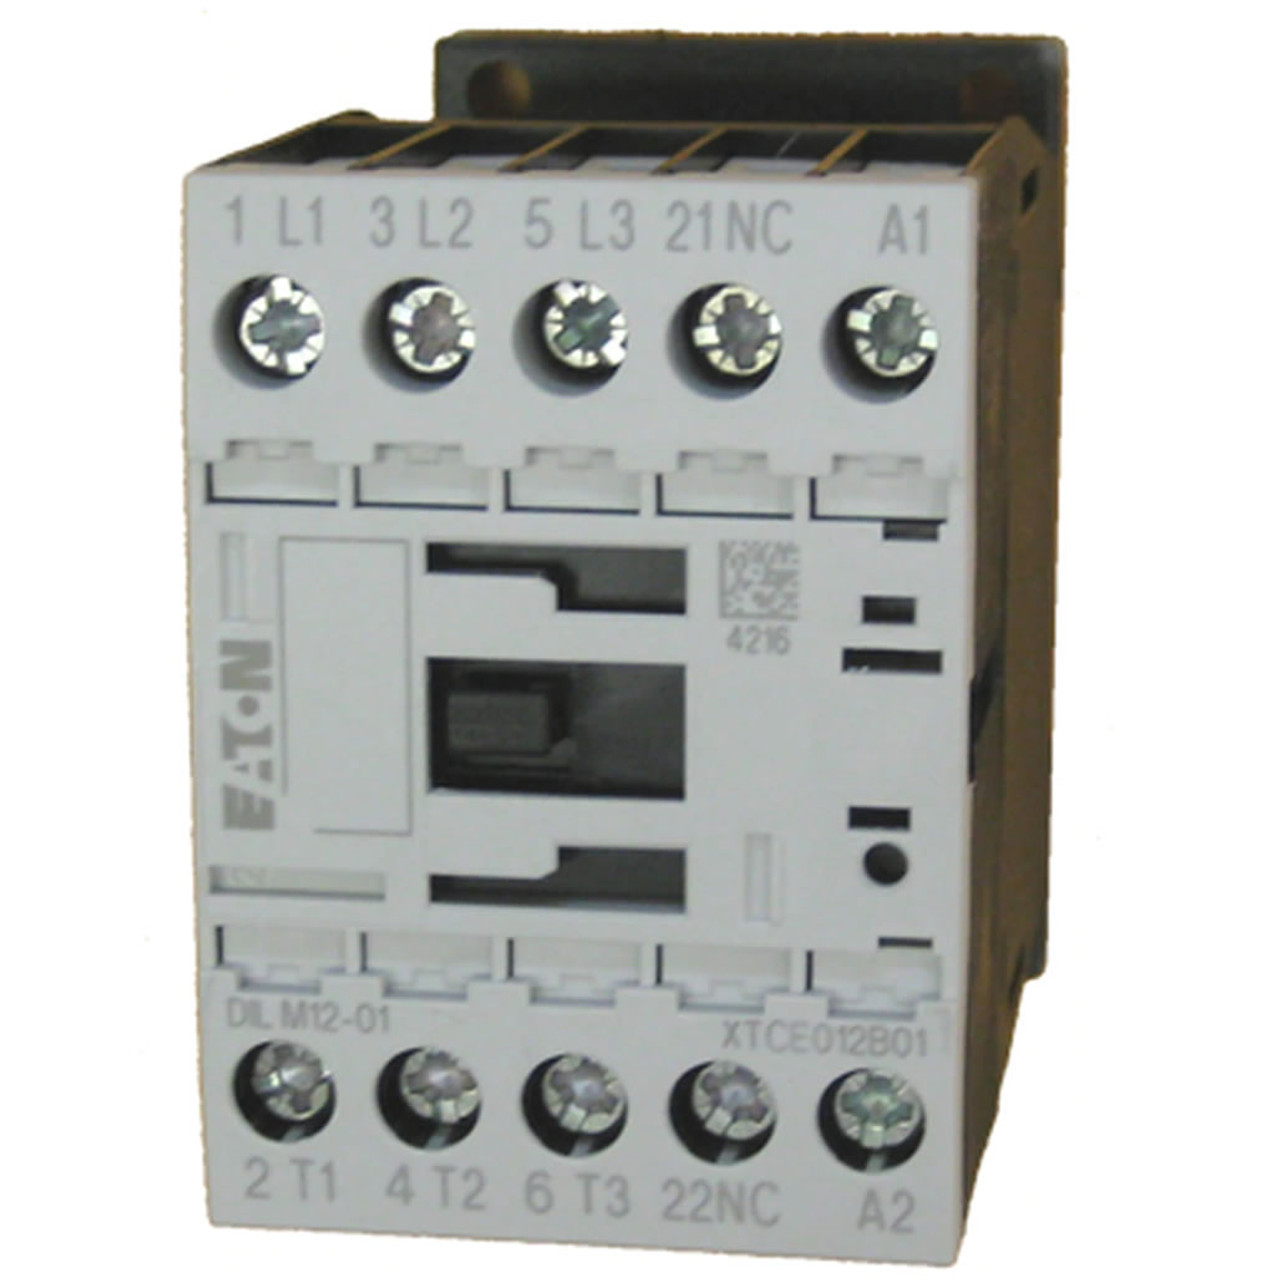 Eaton XTCE012B01T contactor